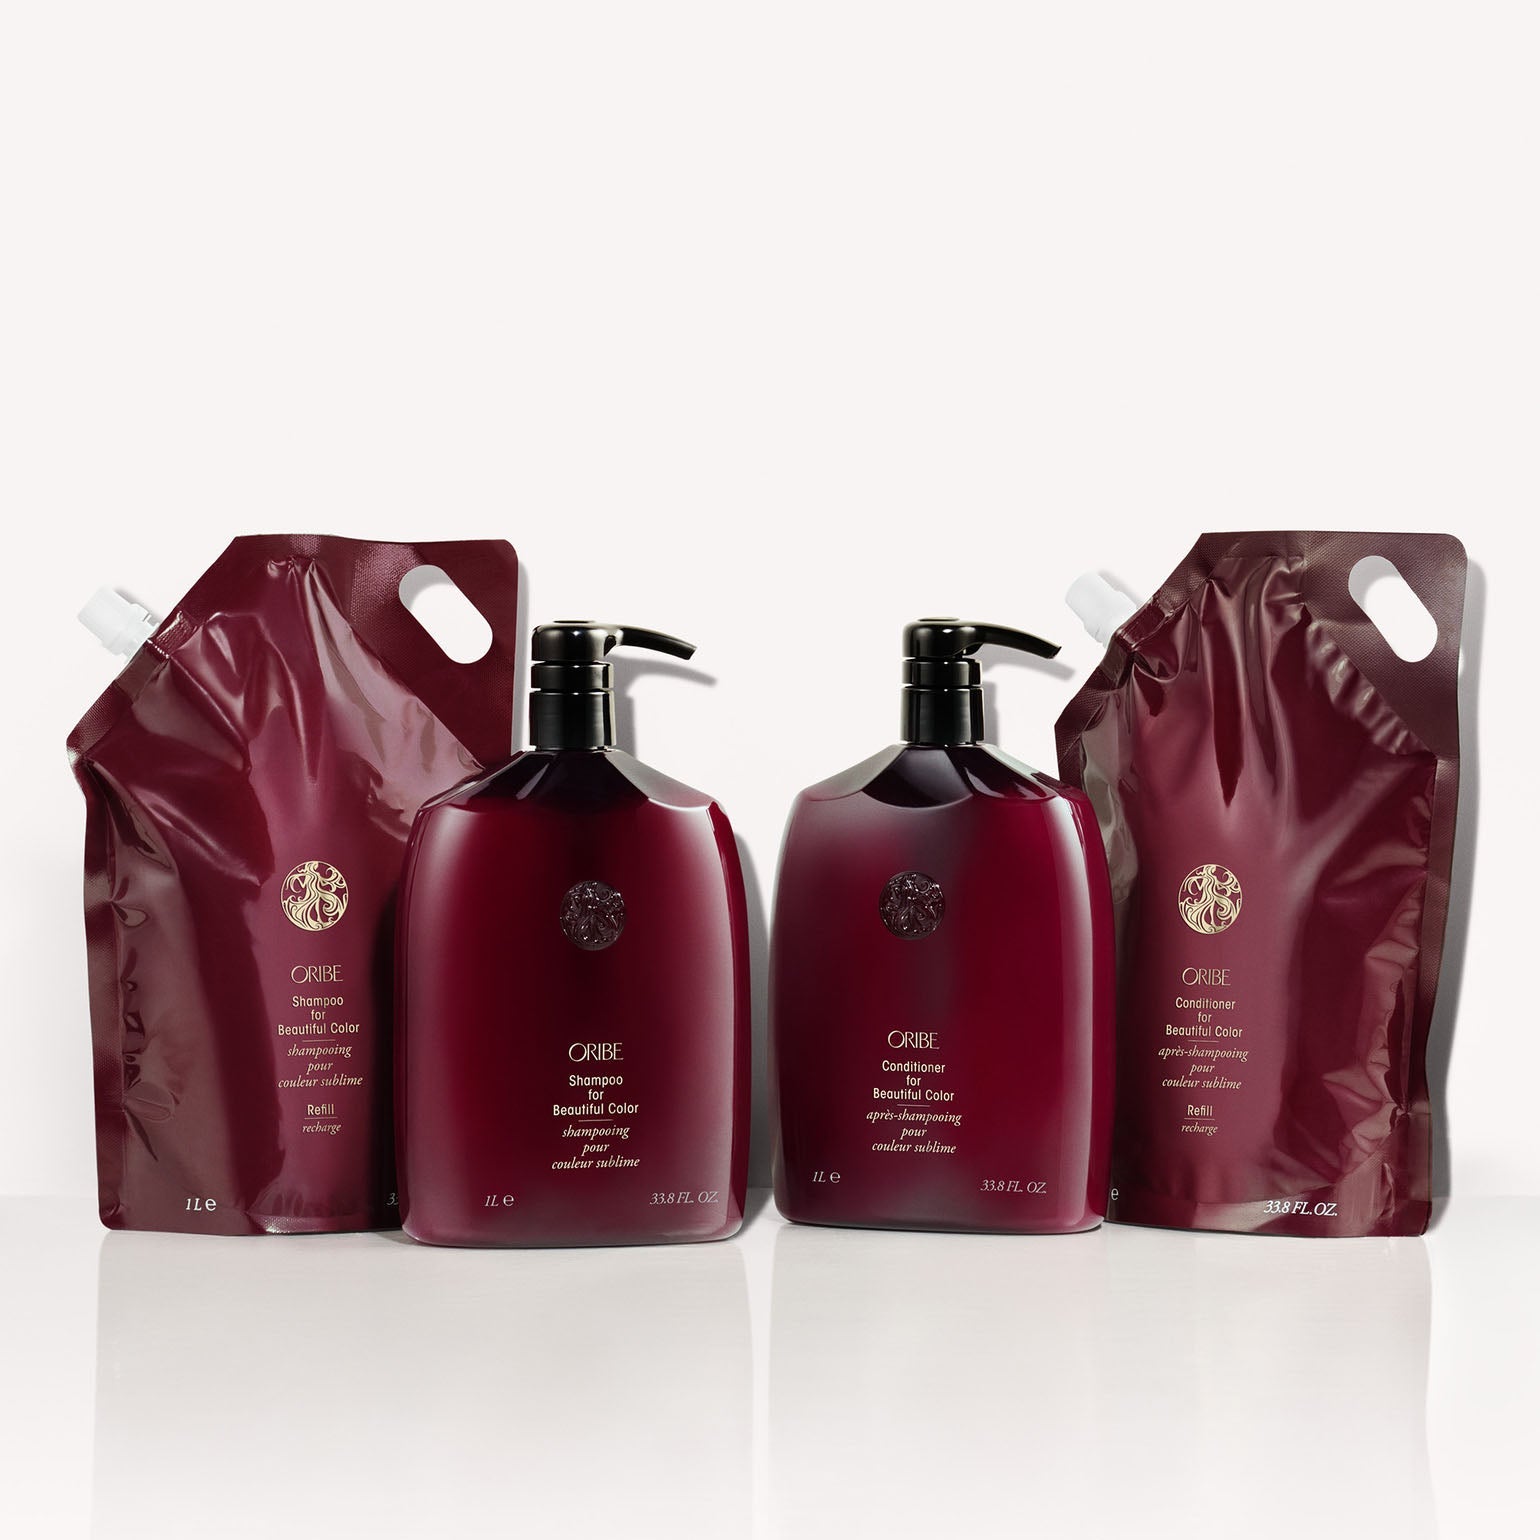 Oribe. Shampoing pour Couleur Sublime - 1000 ml - Concept C. Shop